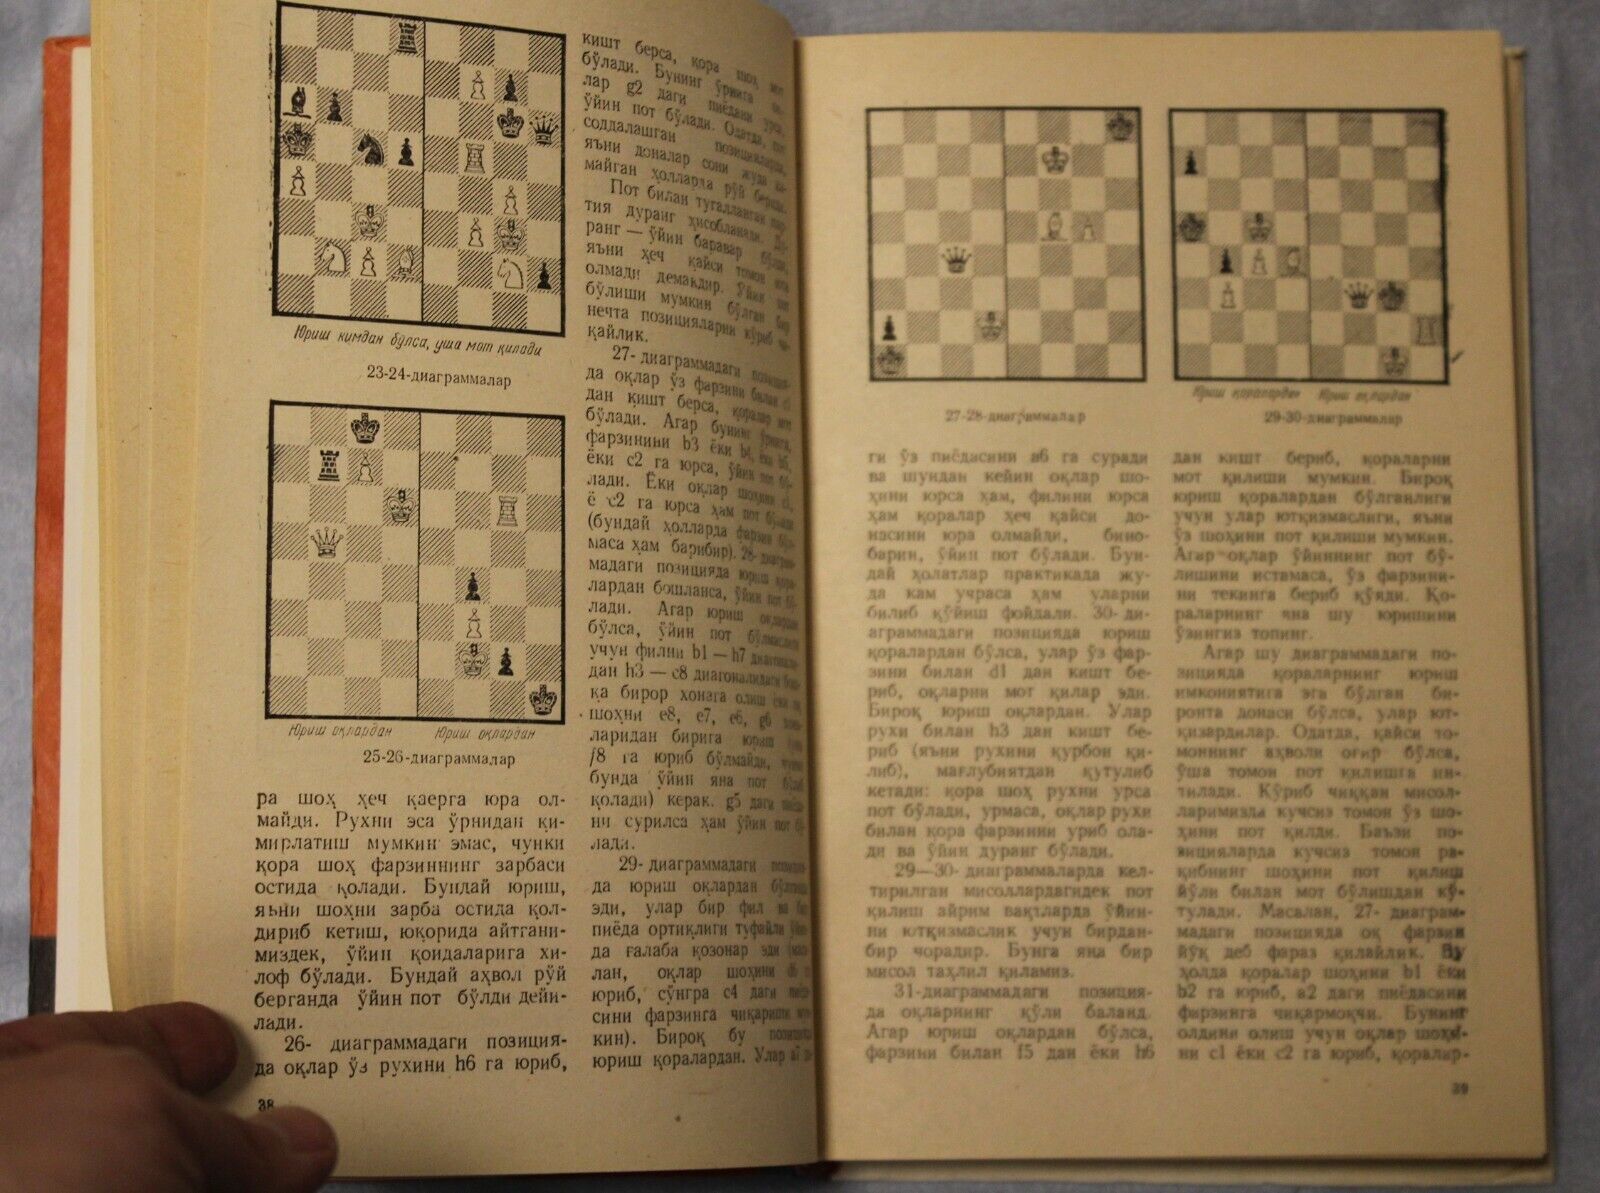 11670.Soviet Book signed by  Muhiddinov. Chess. 1983. Baturinsky-Karpov library